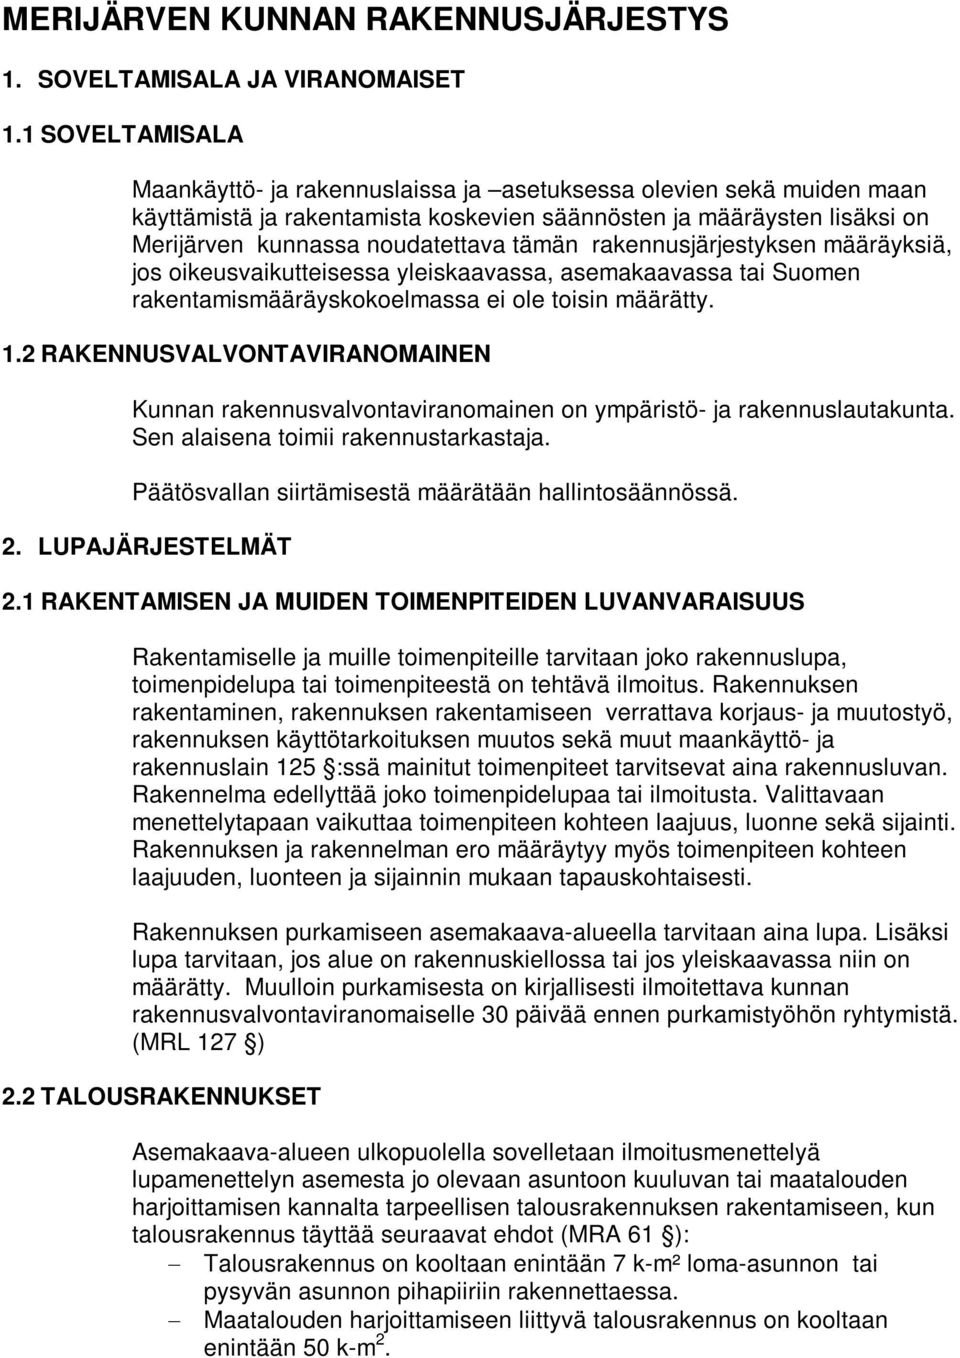 rakennusjärjestyksen määräyksiä, jos oikeusvaikutteisessa yleiskaavassa, asemakaavassa tai Suomen rakentamismääräyskokoelmassa ei ole toisin määrätty. 1.